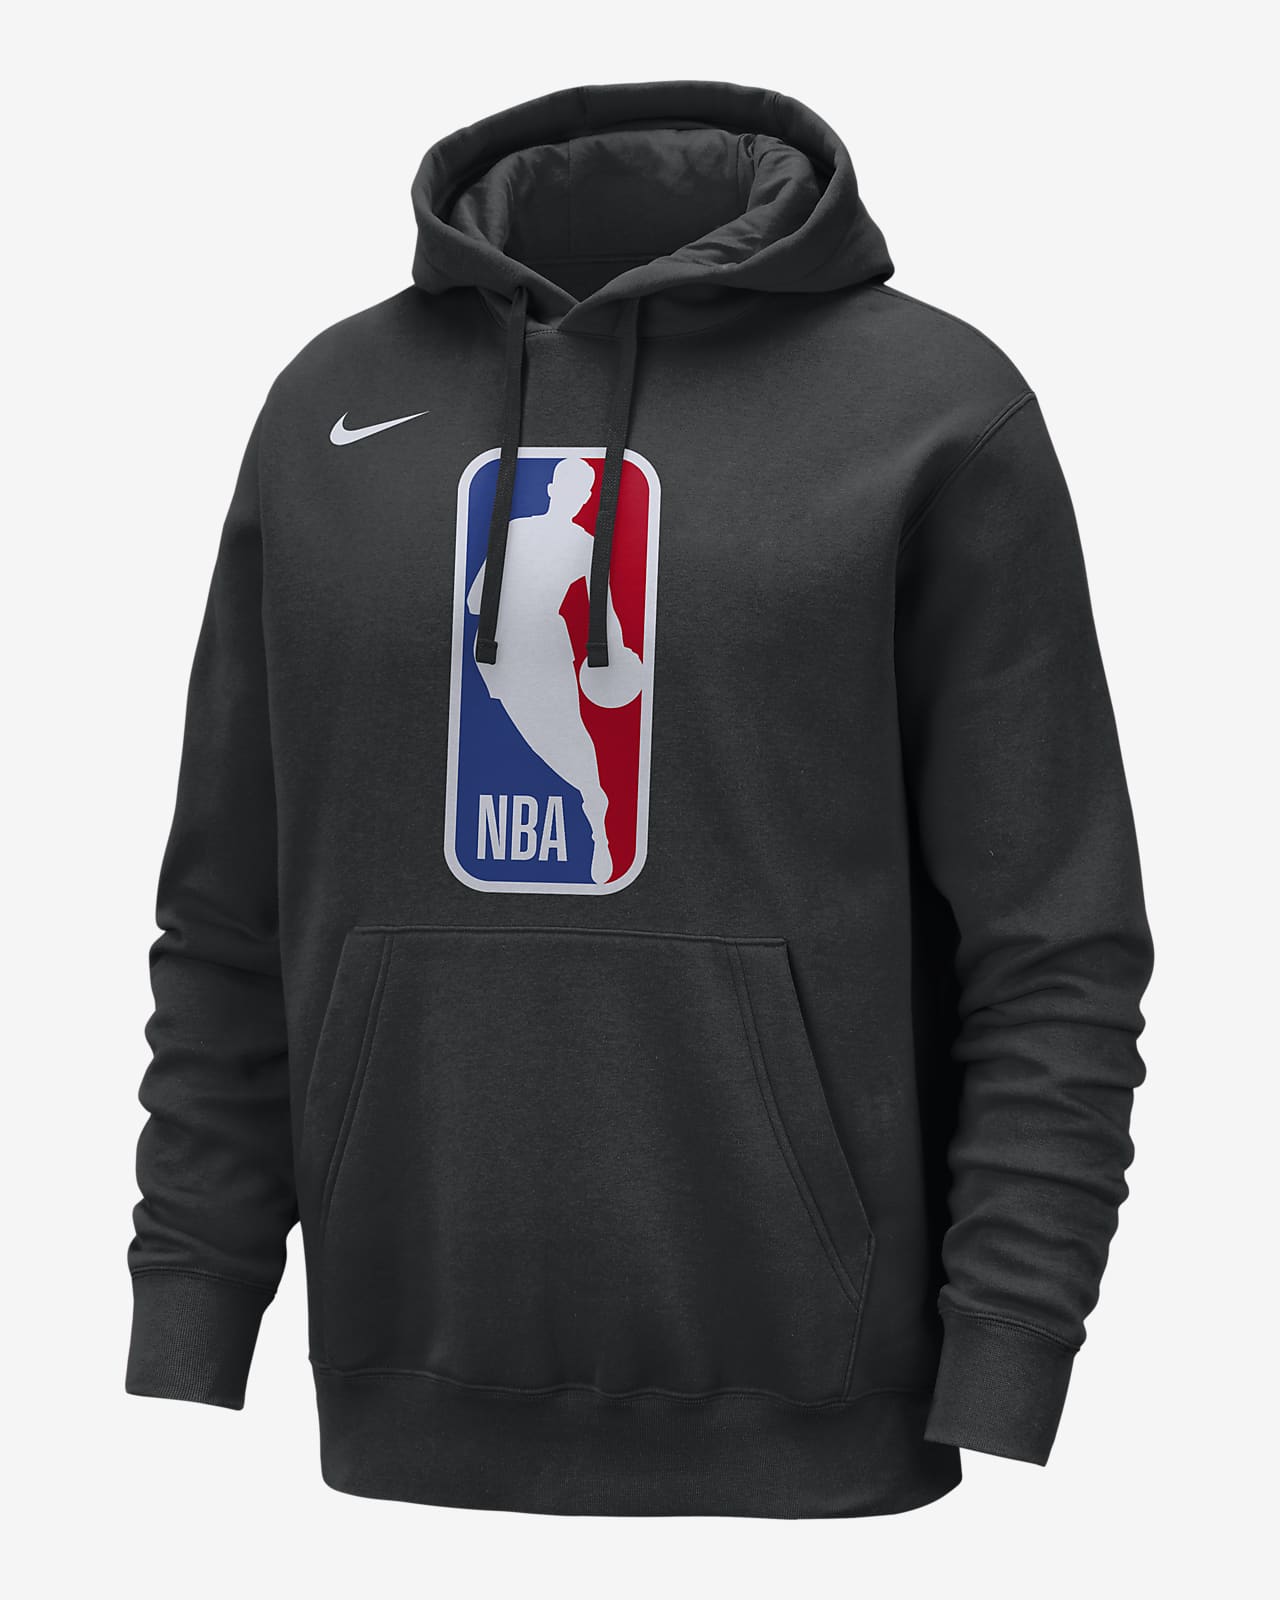 Team 31 Club Nike NBA Kapüşonlu Erkek Sweatshirt'ü